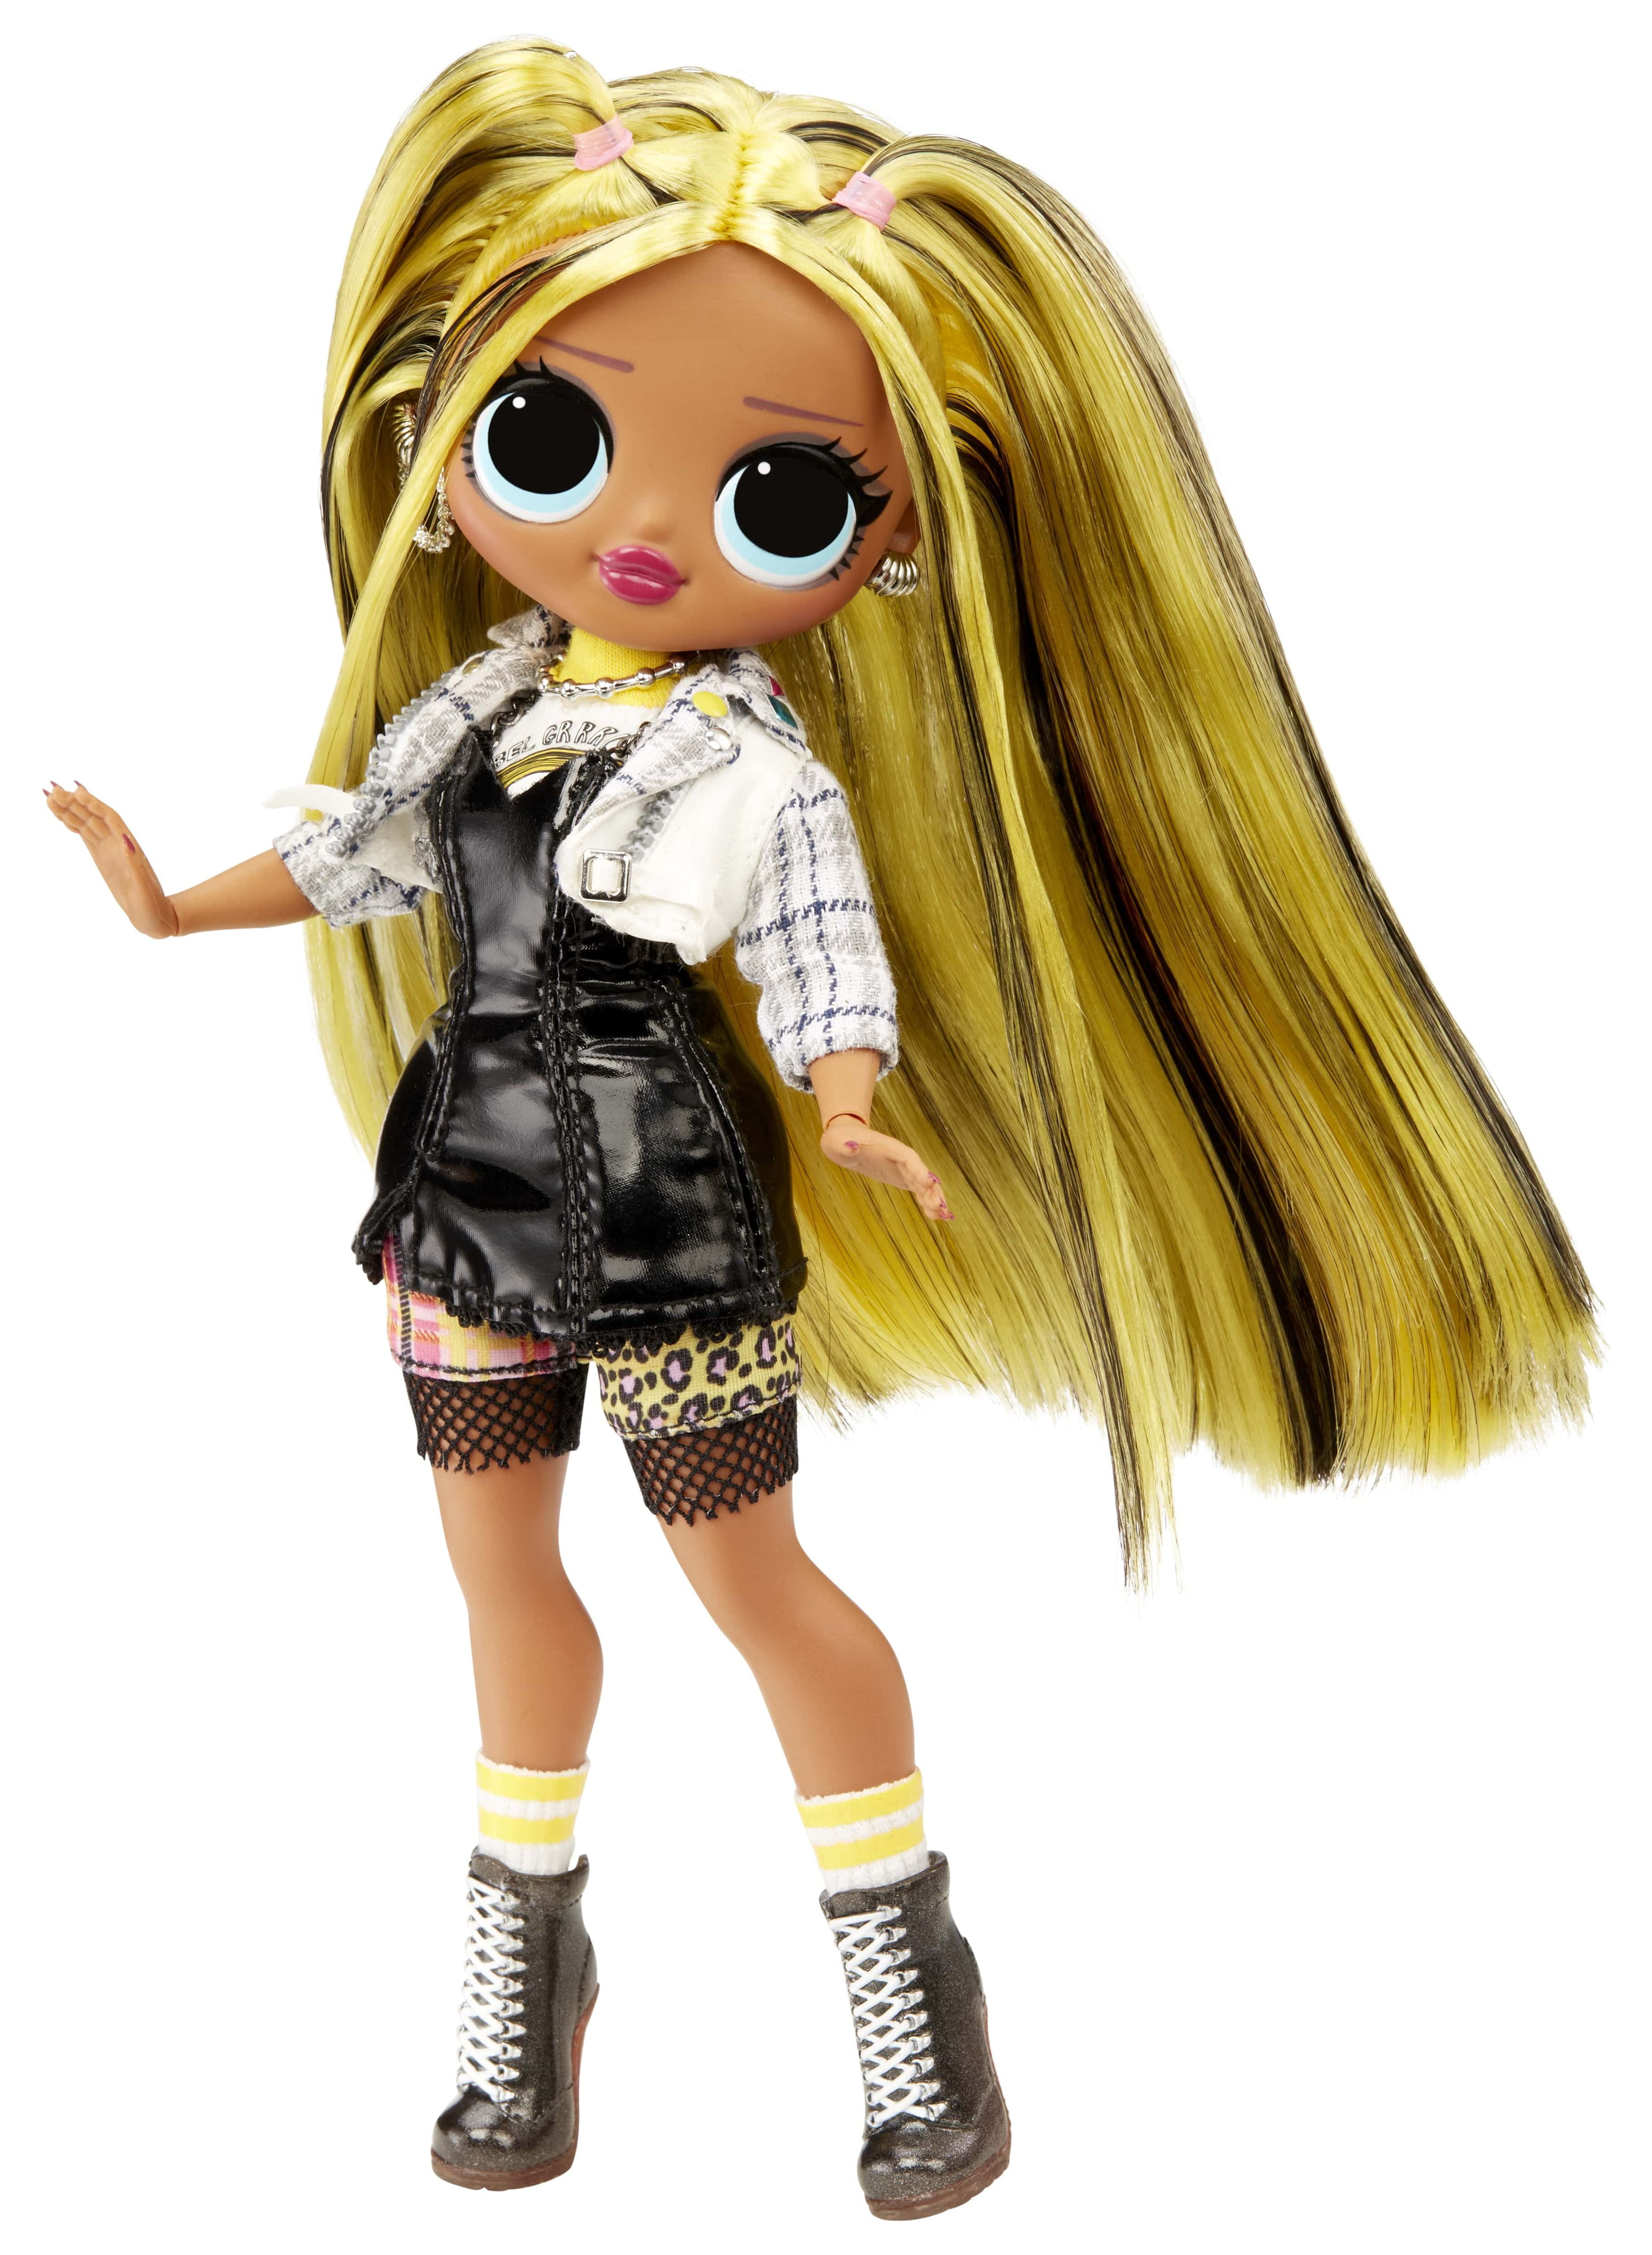 LOL Surprise OMG Alt Grrrl Fashion Doll – Great Gift for Kids Ages 4+